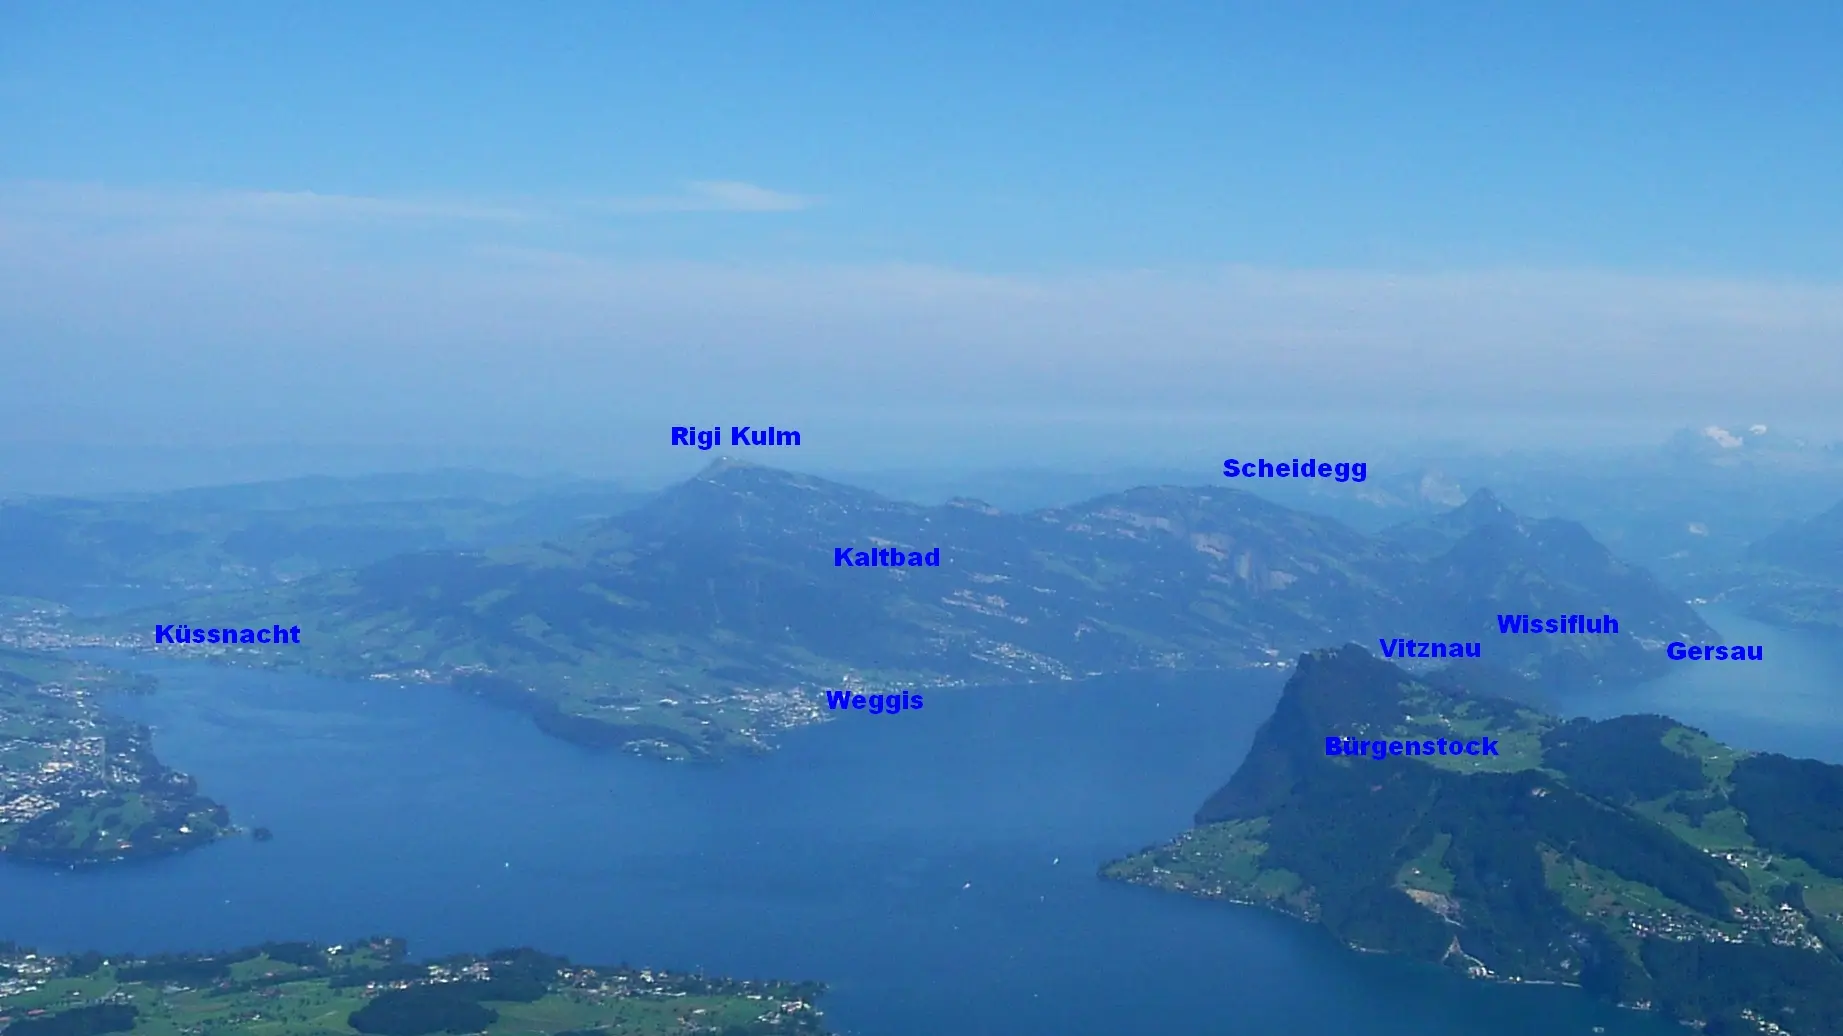 Vierwaldstättersee Lake Lucerne Rigi